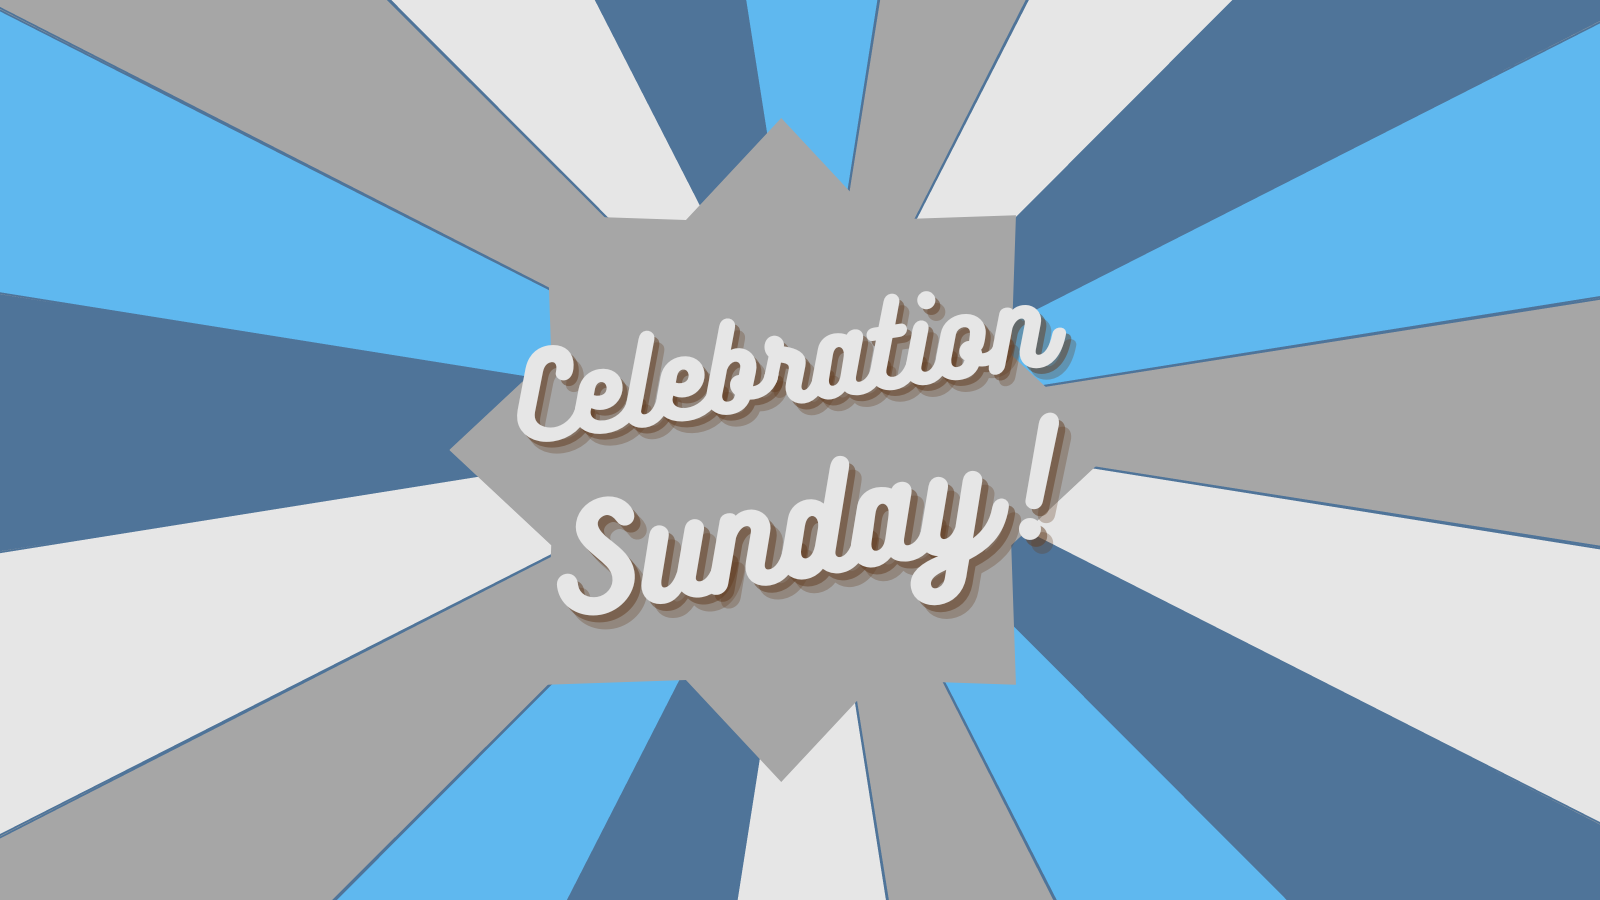 Celebration Sunday (1600 × 900 px) image